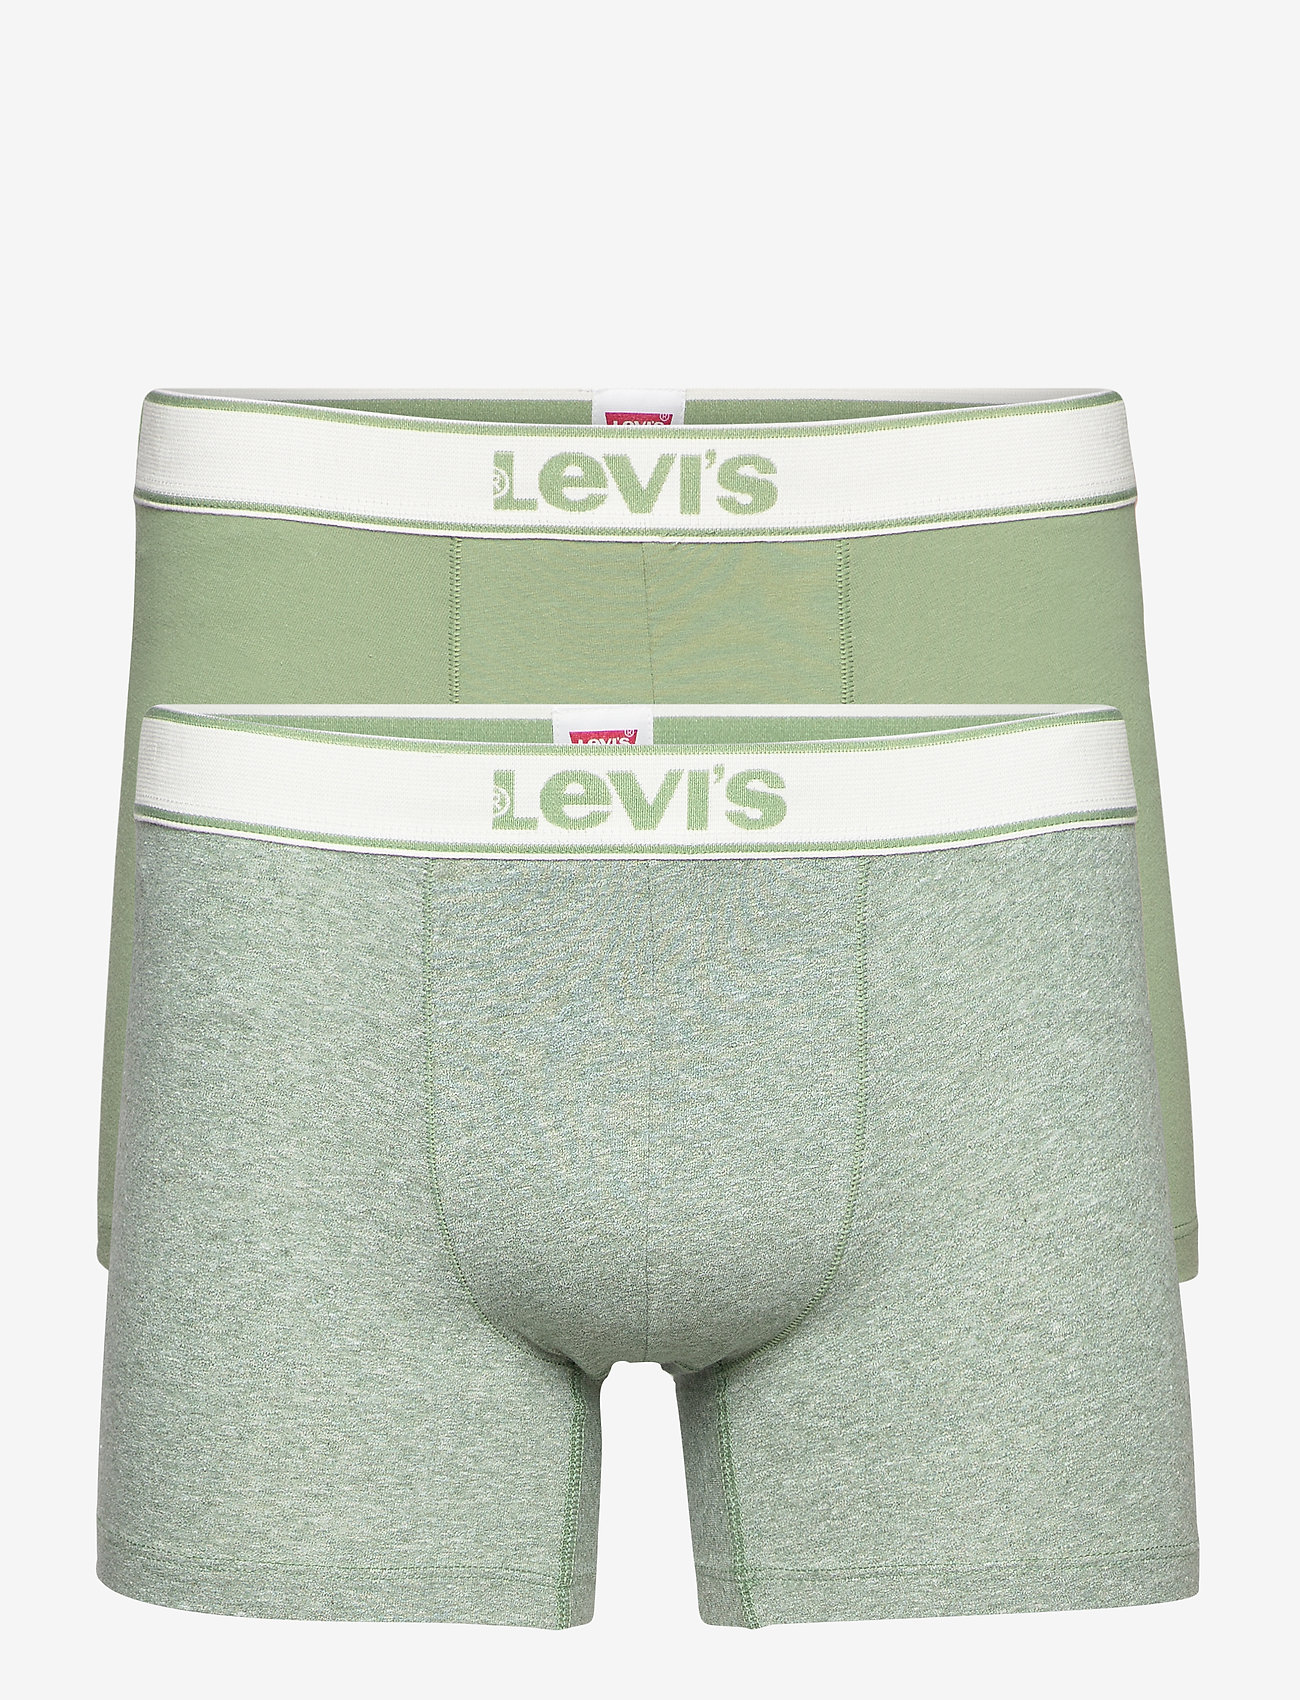 levis innerwear company